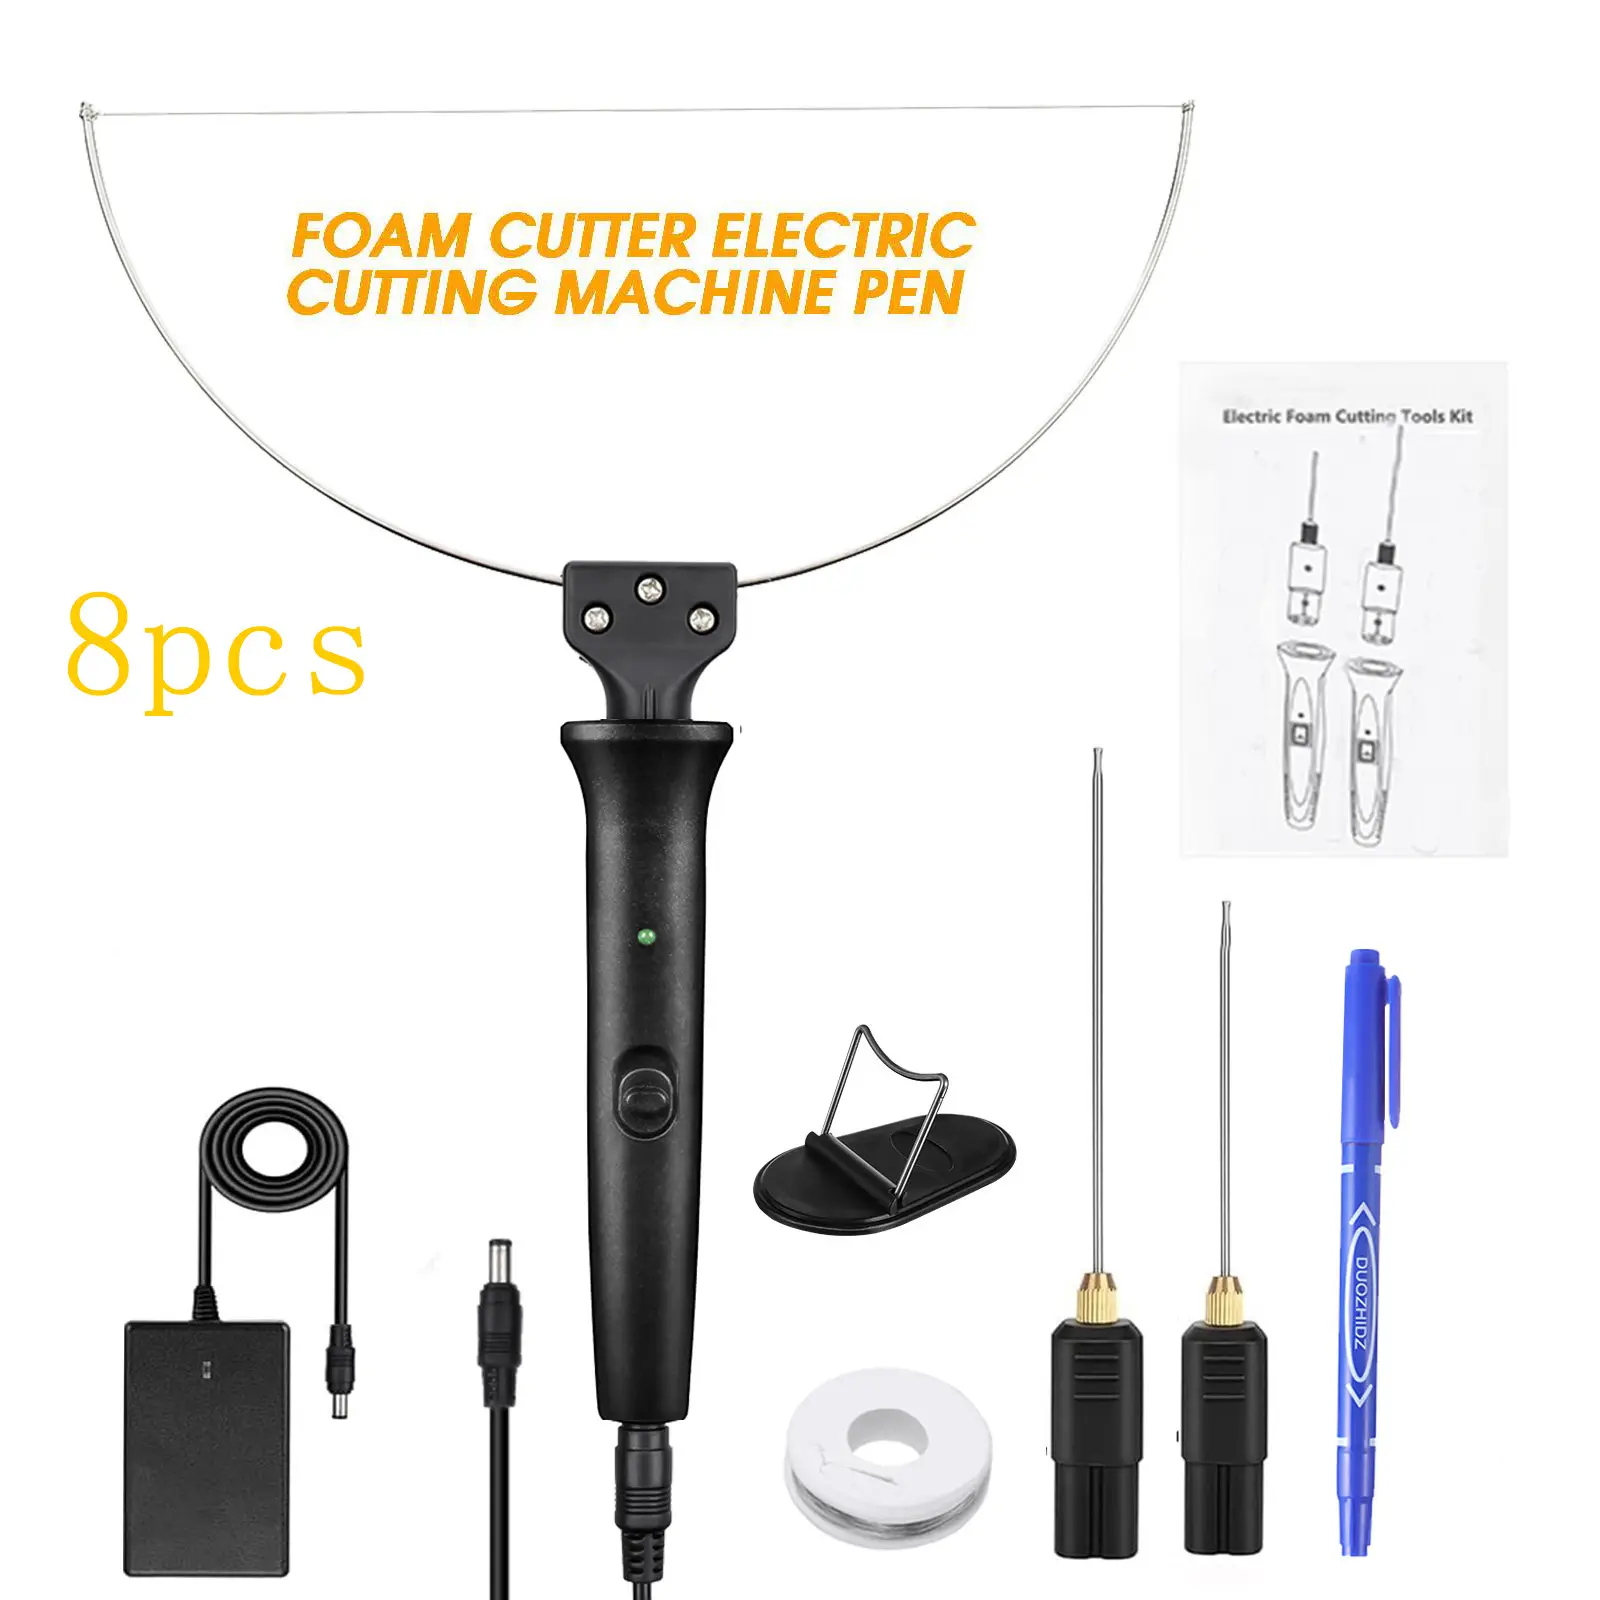 Electric Cutting Machine Pen Tools Kit 8PCS Hot Wire Foam Cutter 100-240V DIY Craft Styrofoam Cutting Pen